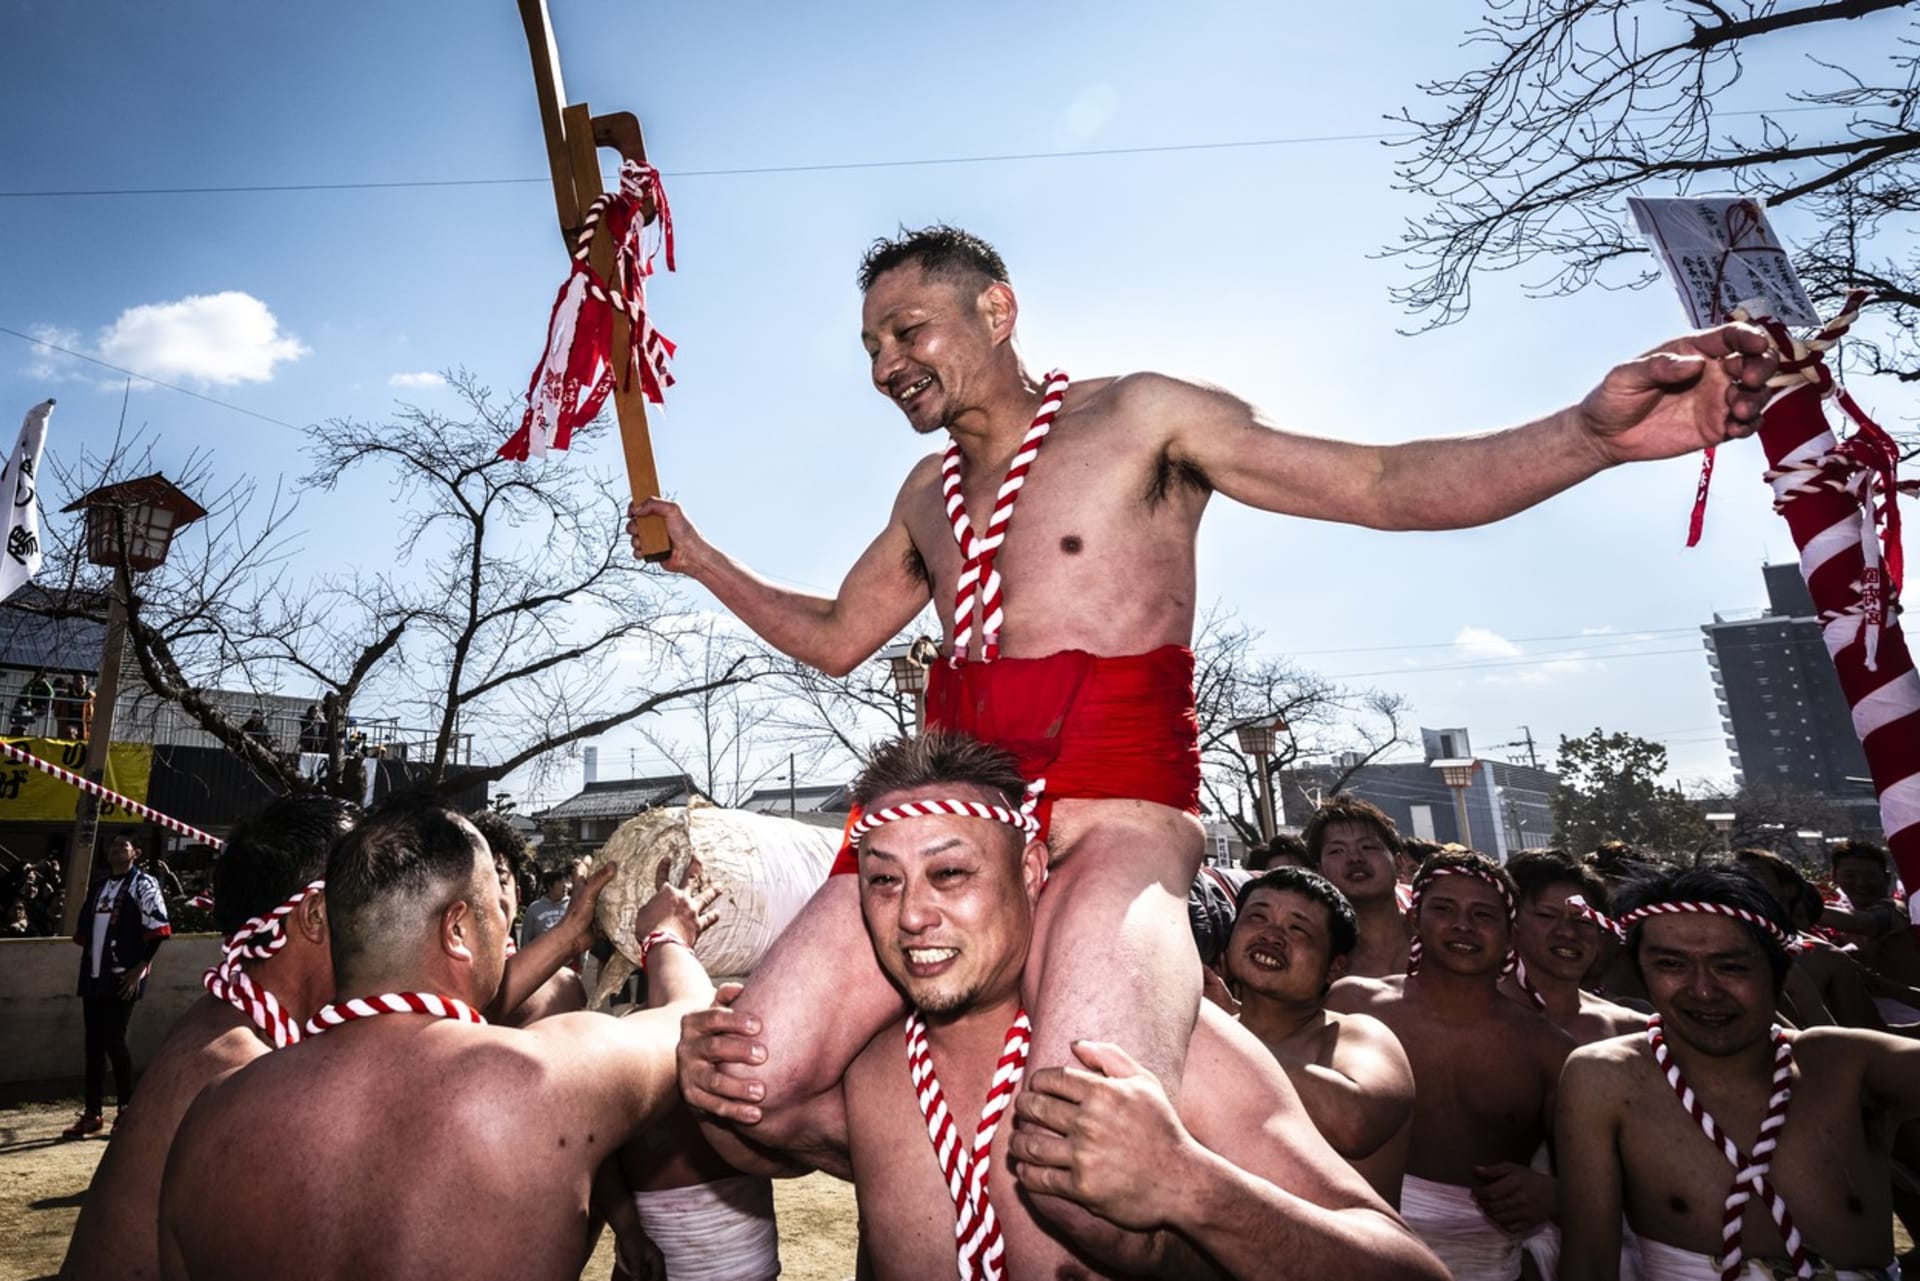 Tisíce mužů na festivalu Hadaka Macuri na sobě mají pouze bederní roušky.